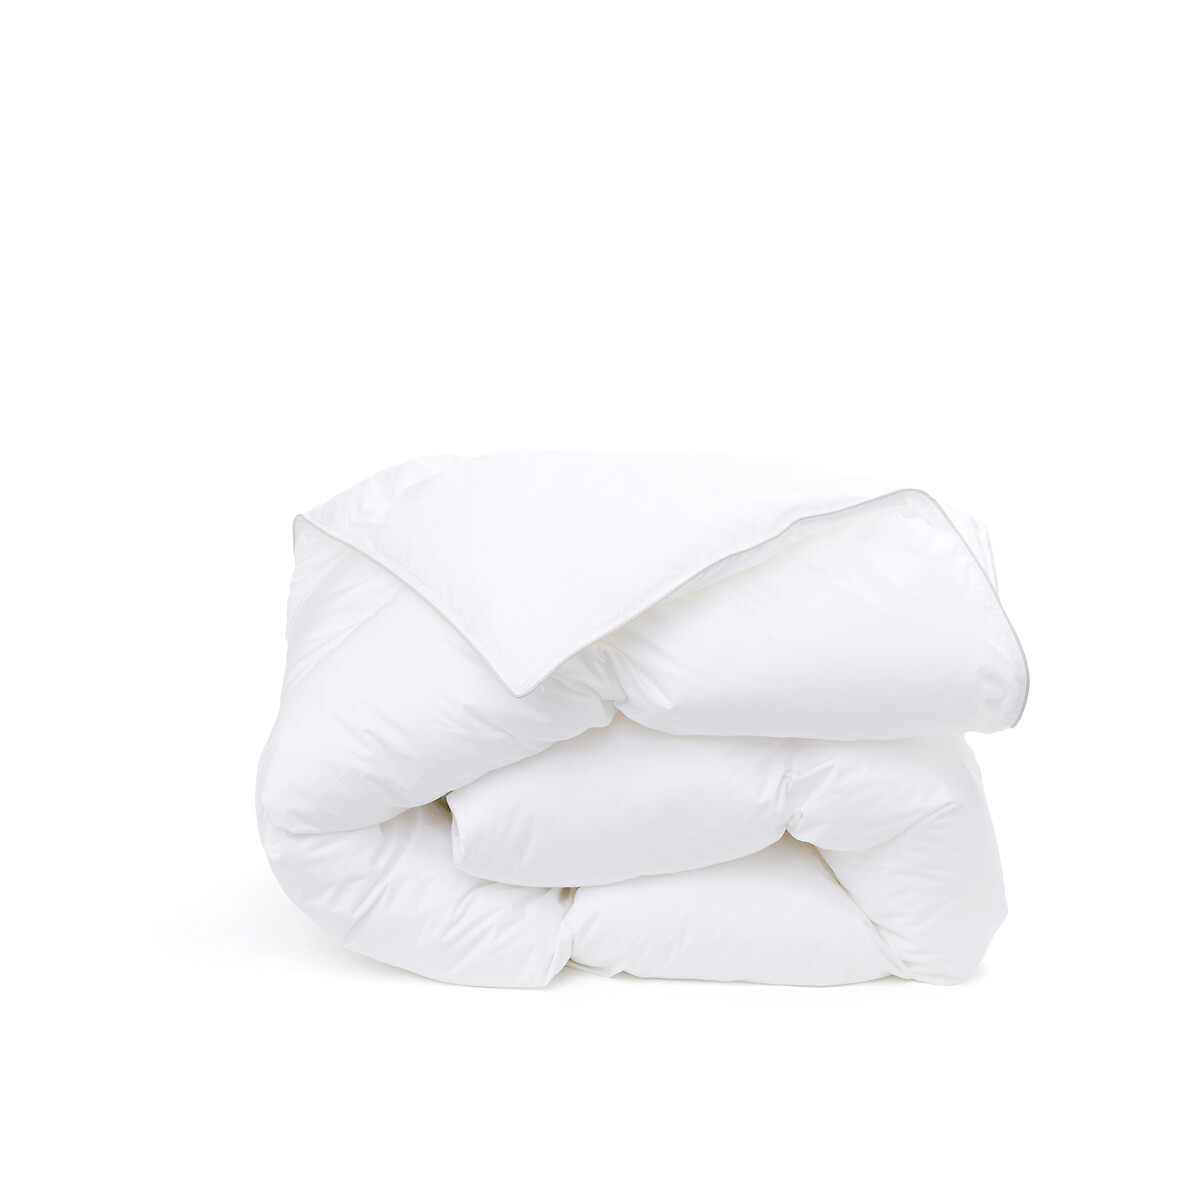 Одеяло сверхпышное с обработкой от клещей для прохладных помещений  200 x 200 см белый LaRedoute, размер 200 x 200 см - фото 1